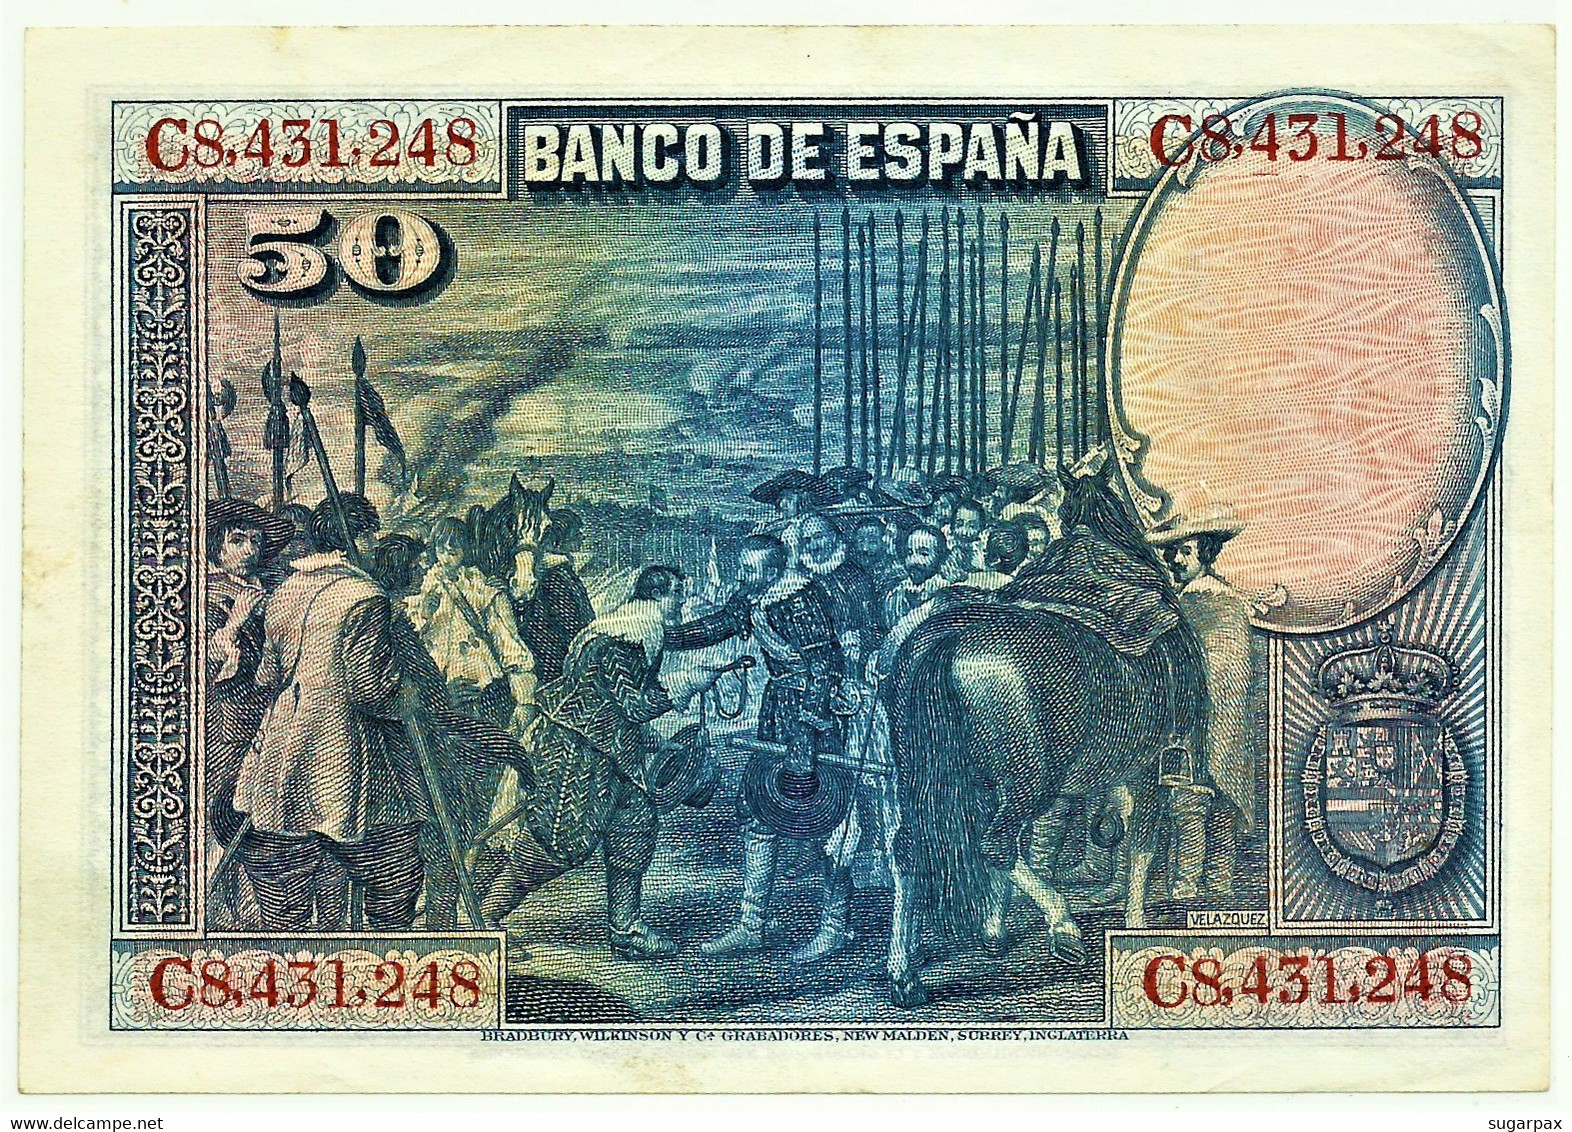 ESPAÑA - 50 Pesetas - 15.08.1928 - Pick 75.c - Serie C - Diego Velázquez - Kingdom - 50 Pesetas